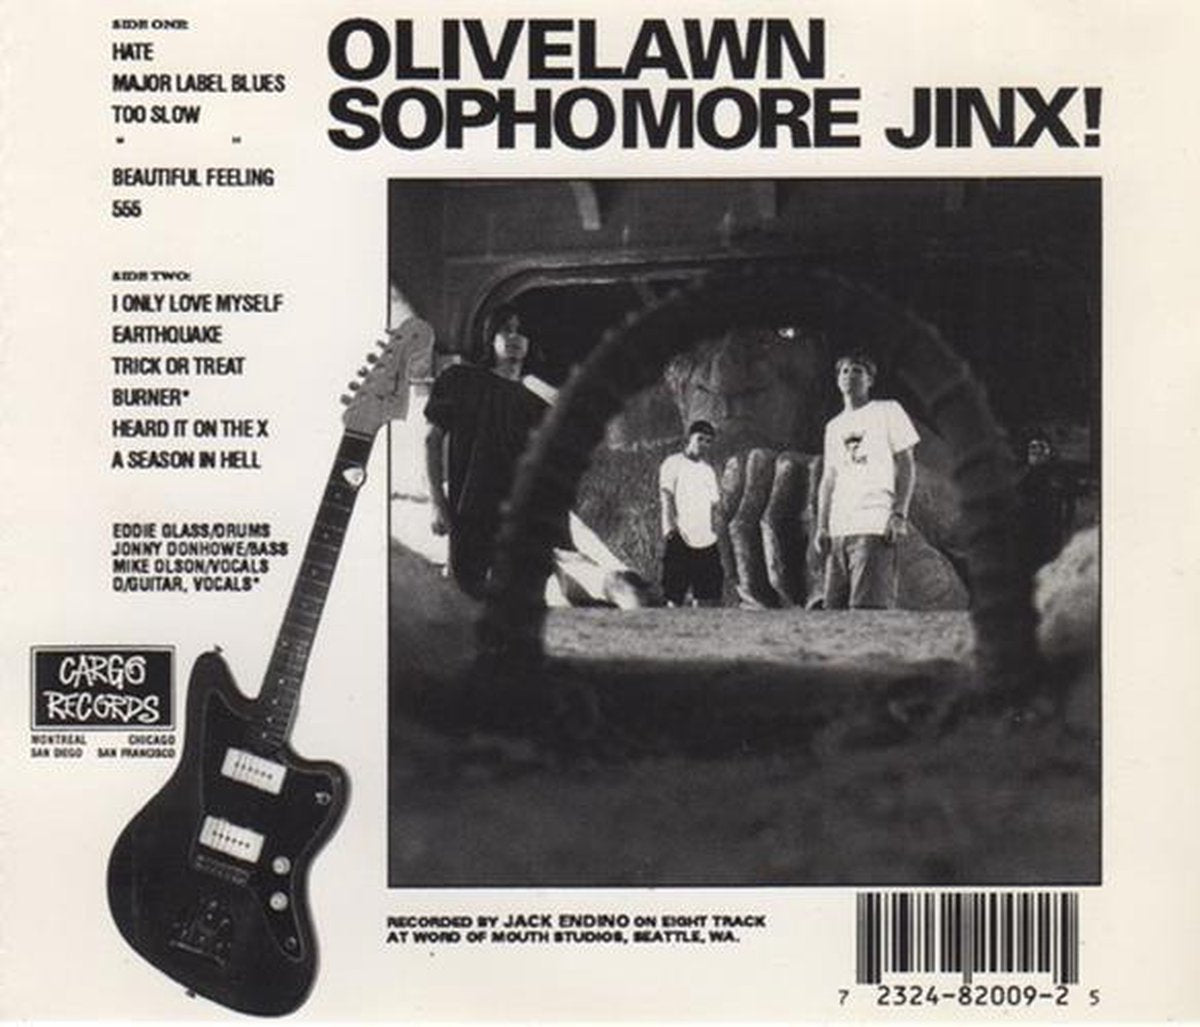 Olivelawn "Sophomore Jinx!" CD